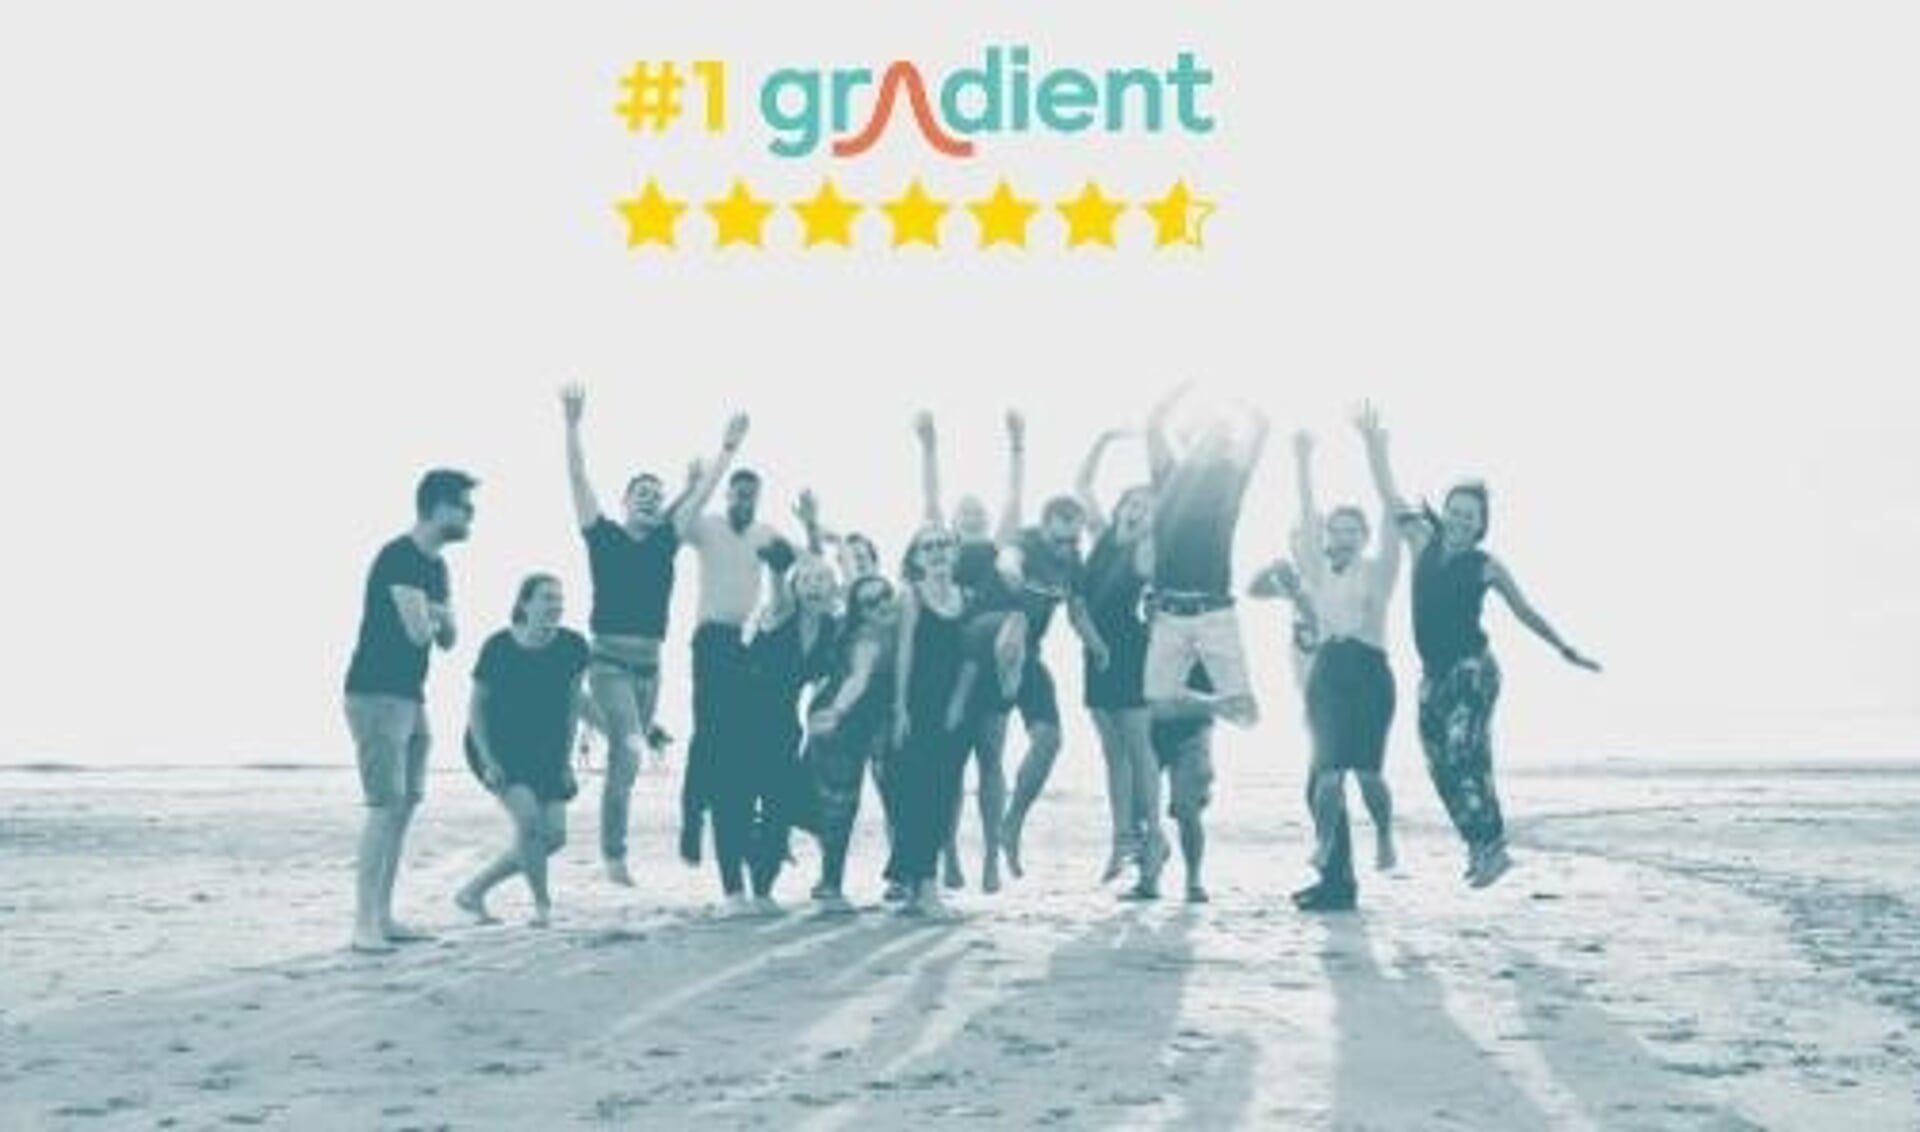 Gradient is in de categorie middelgrote marketingbureaus door Emerce verkozen tot 'Beste Digitale Marketingbureau van 2021'